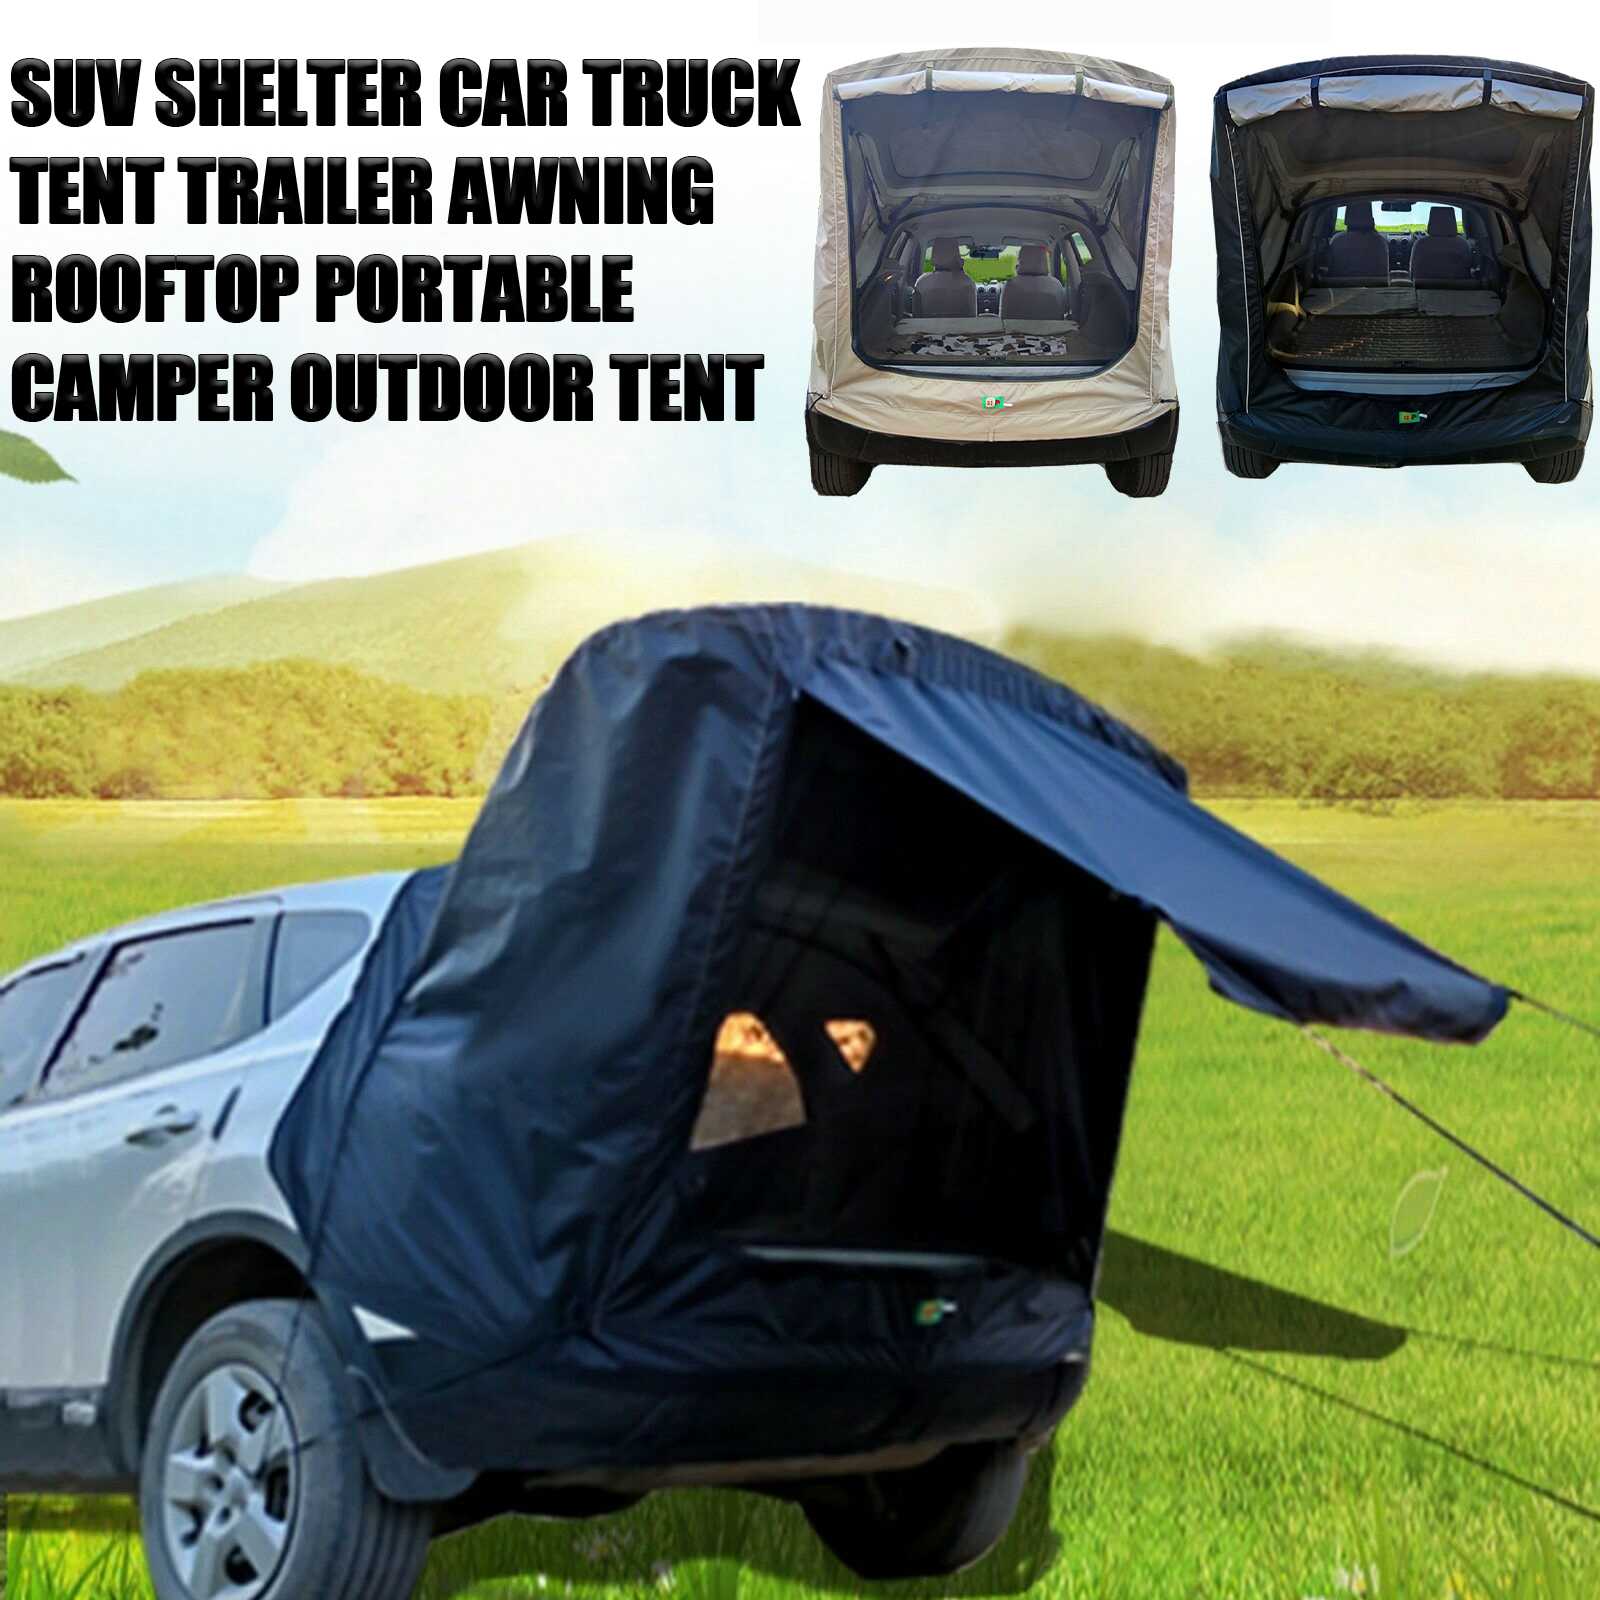 휴대용 캠핑 휴대용 자동차 트럭 텐트, SUV, 스스로 운전, 자동차 테일 확장 텐트, 야외 모바일 방수, 태양 보호